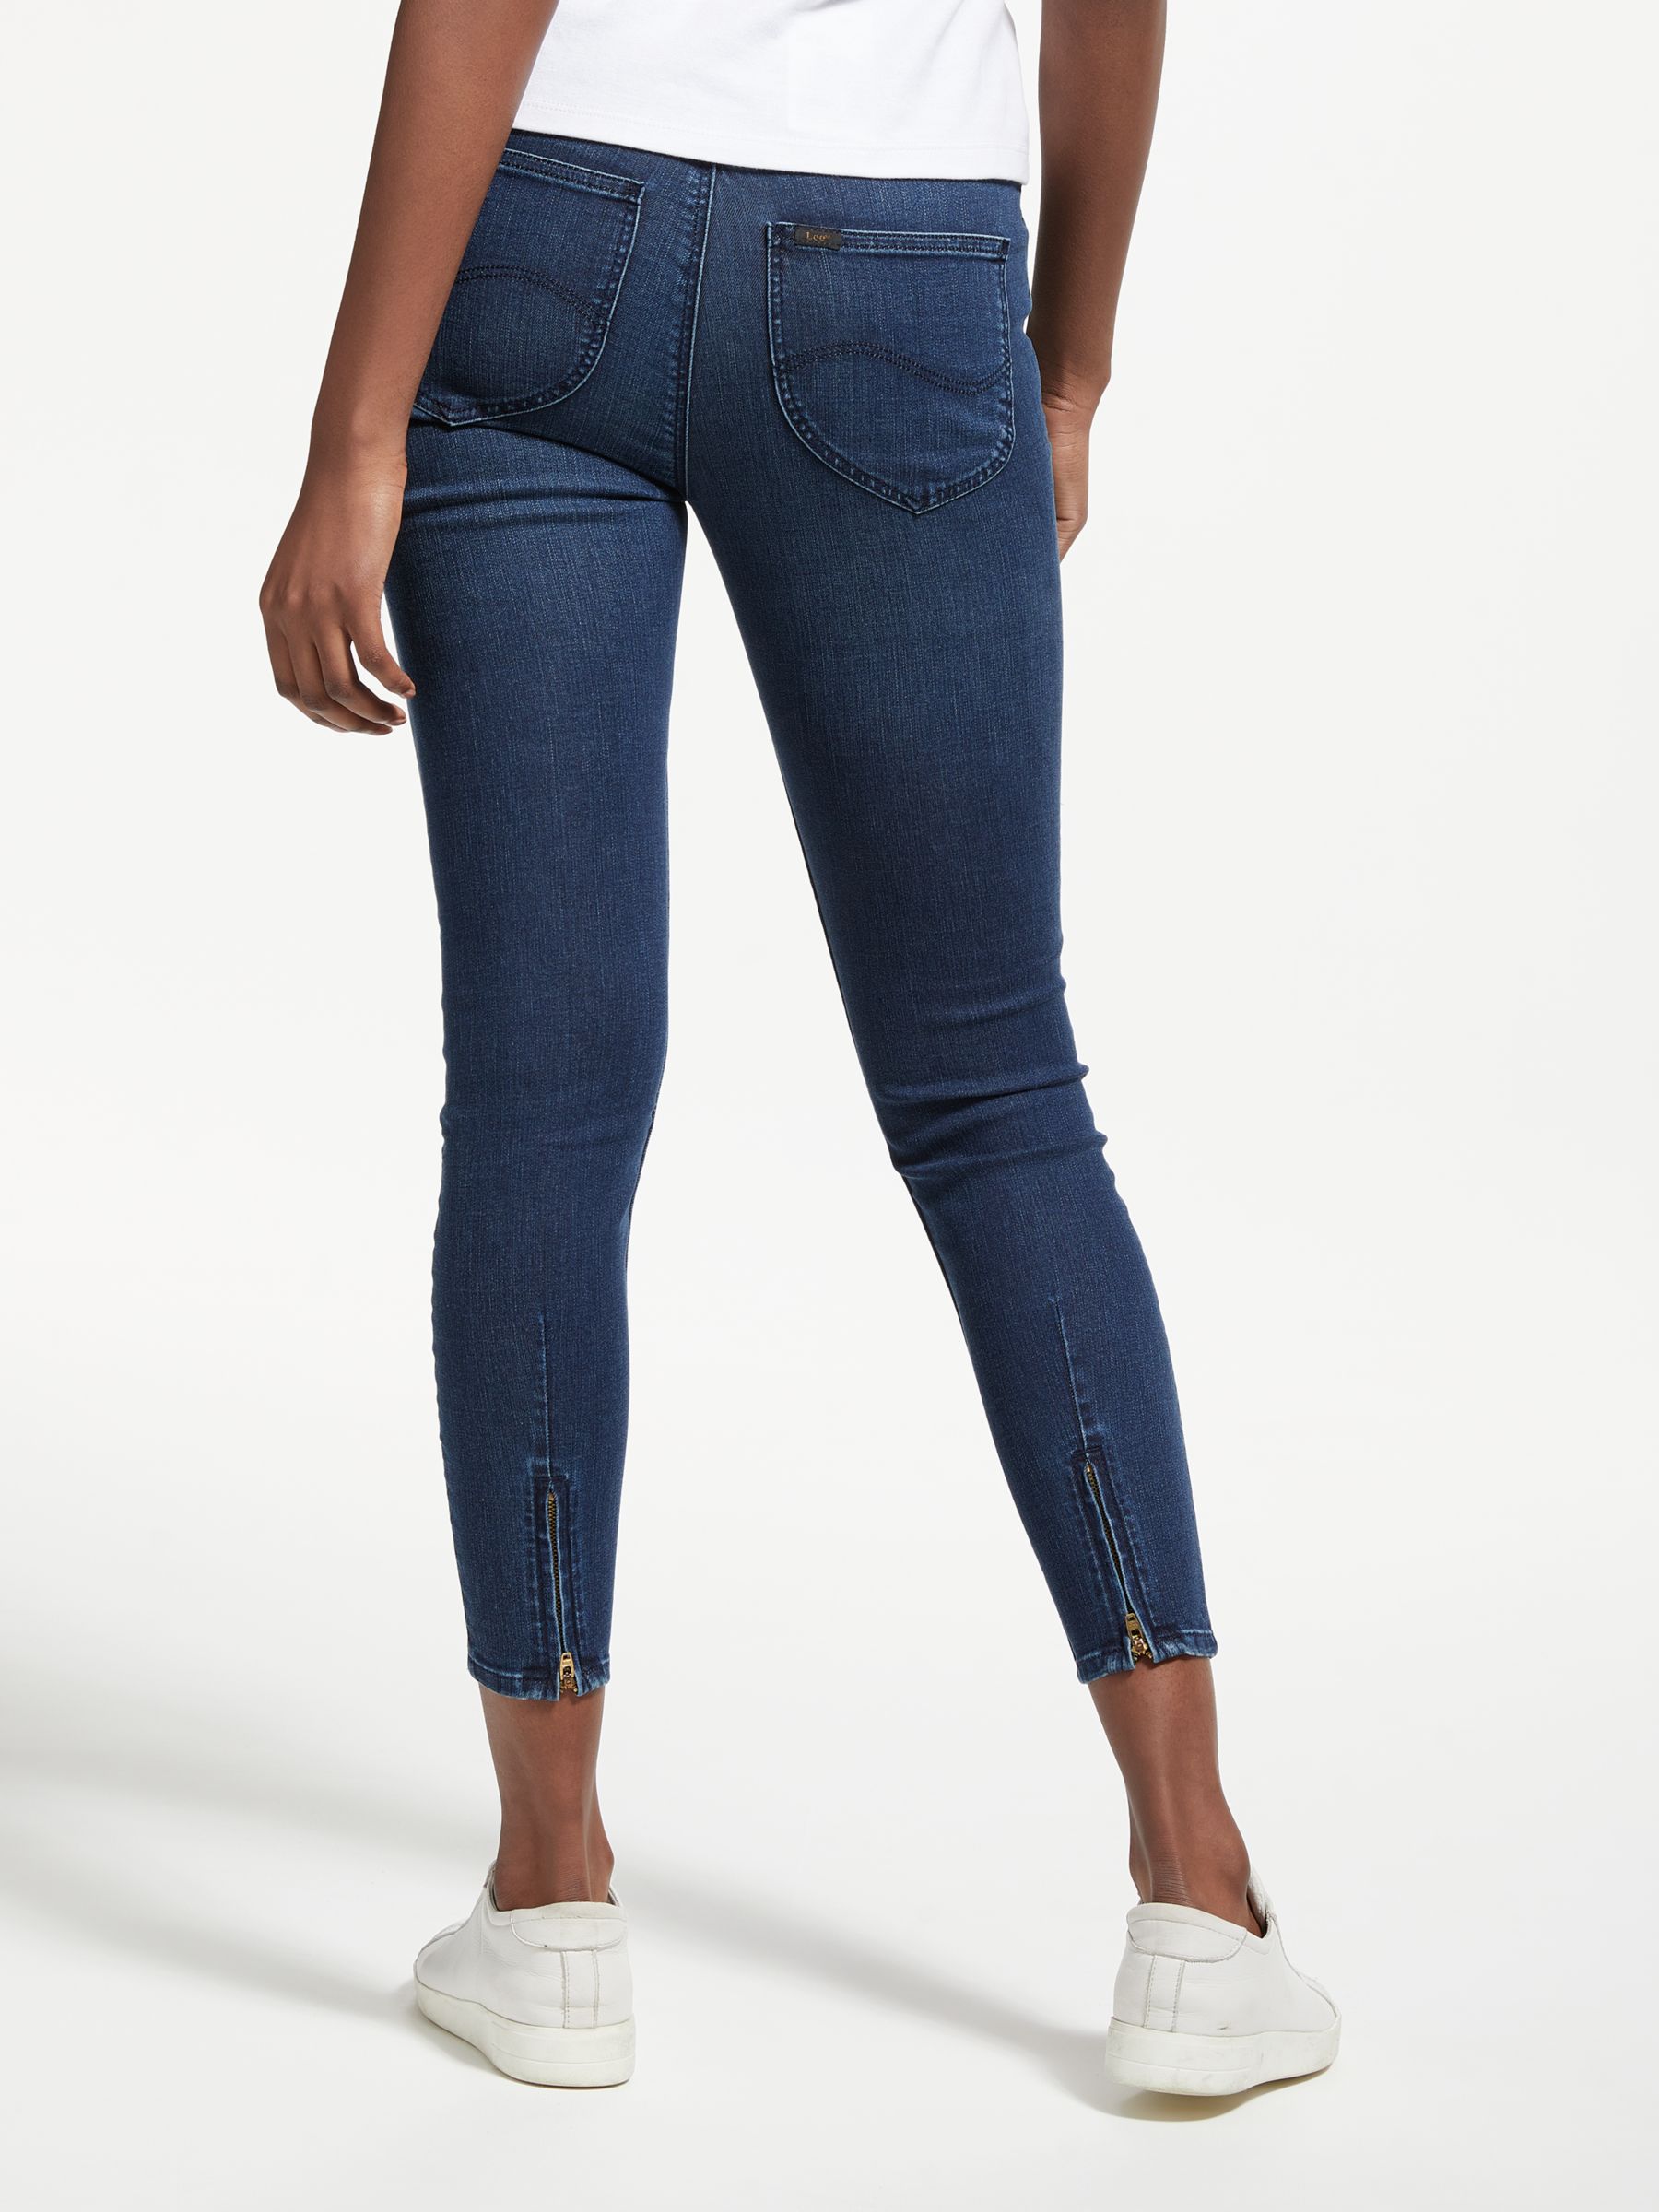 lee jeans scarlett cropped skinny